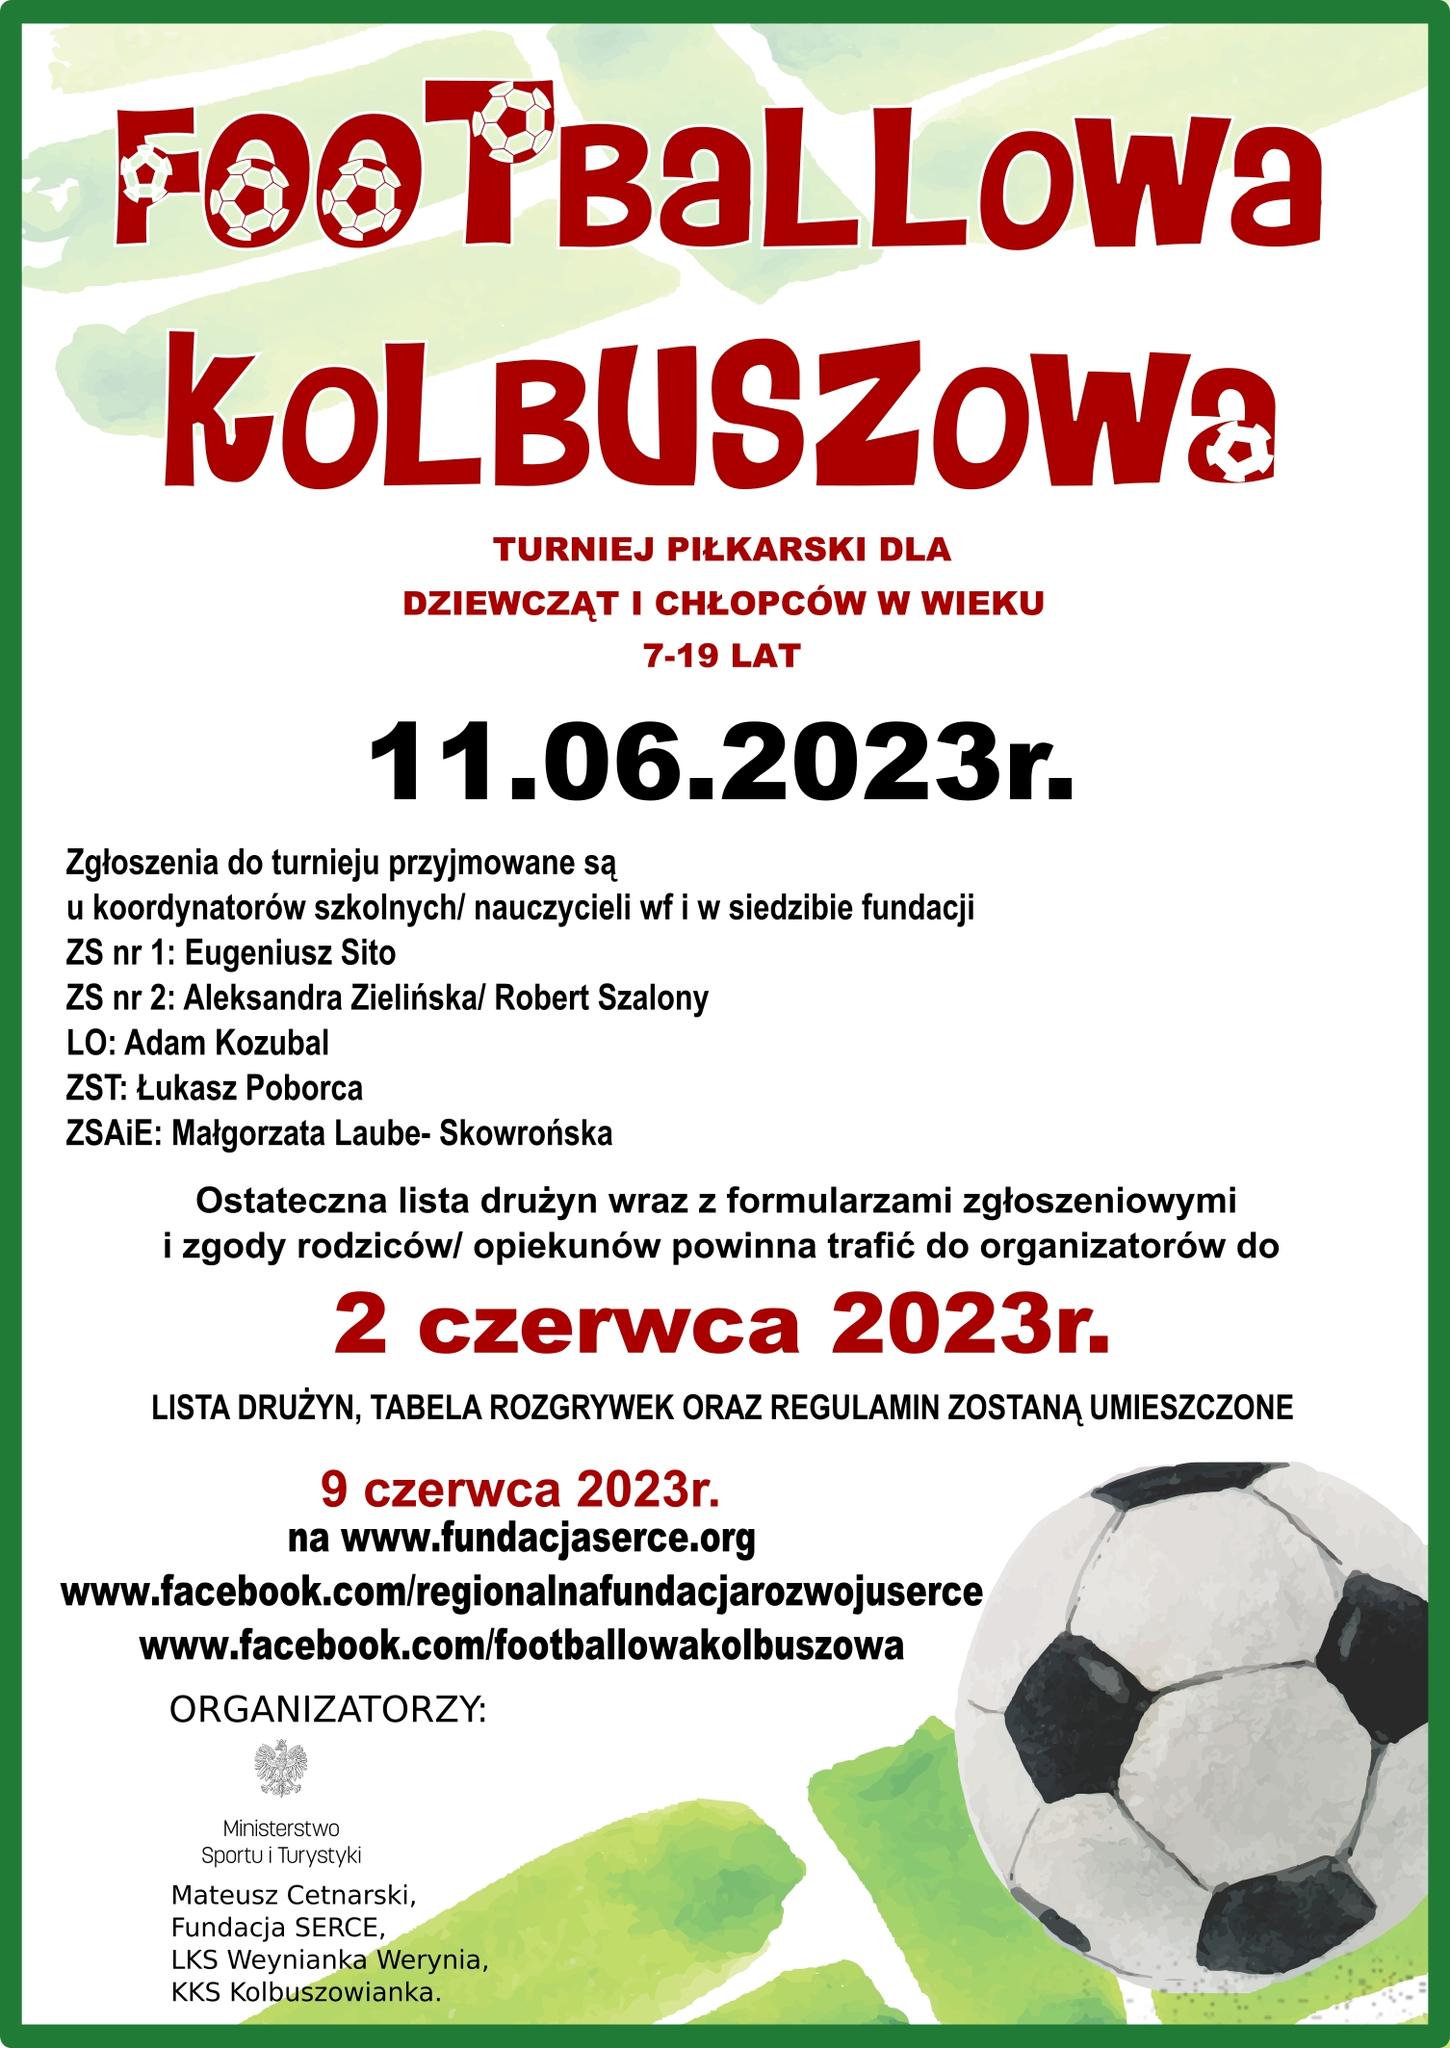 Footballowa Kolbuszowa